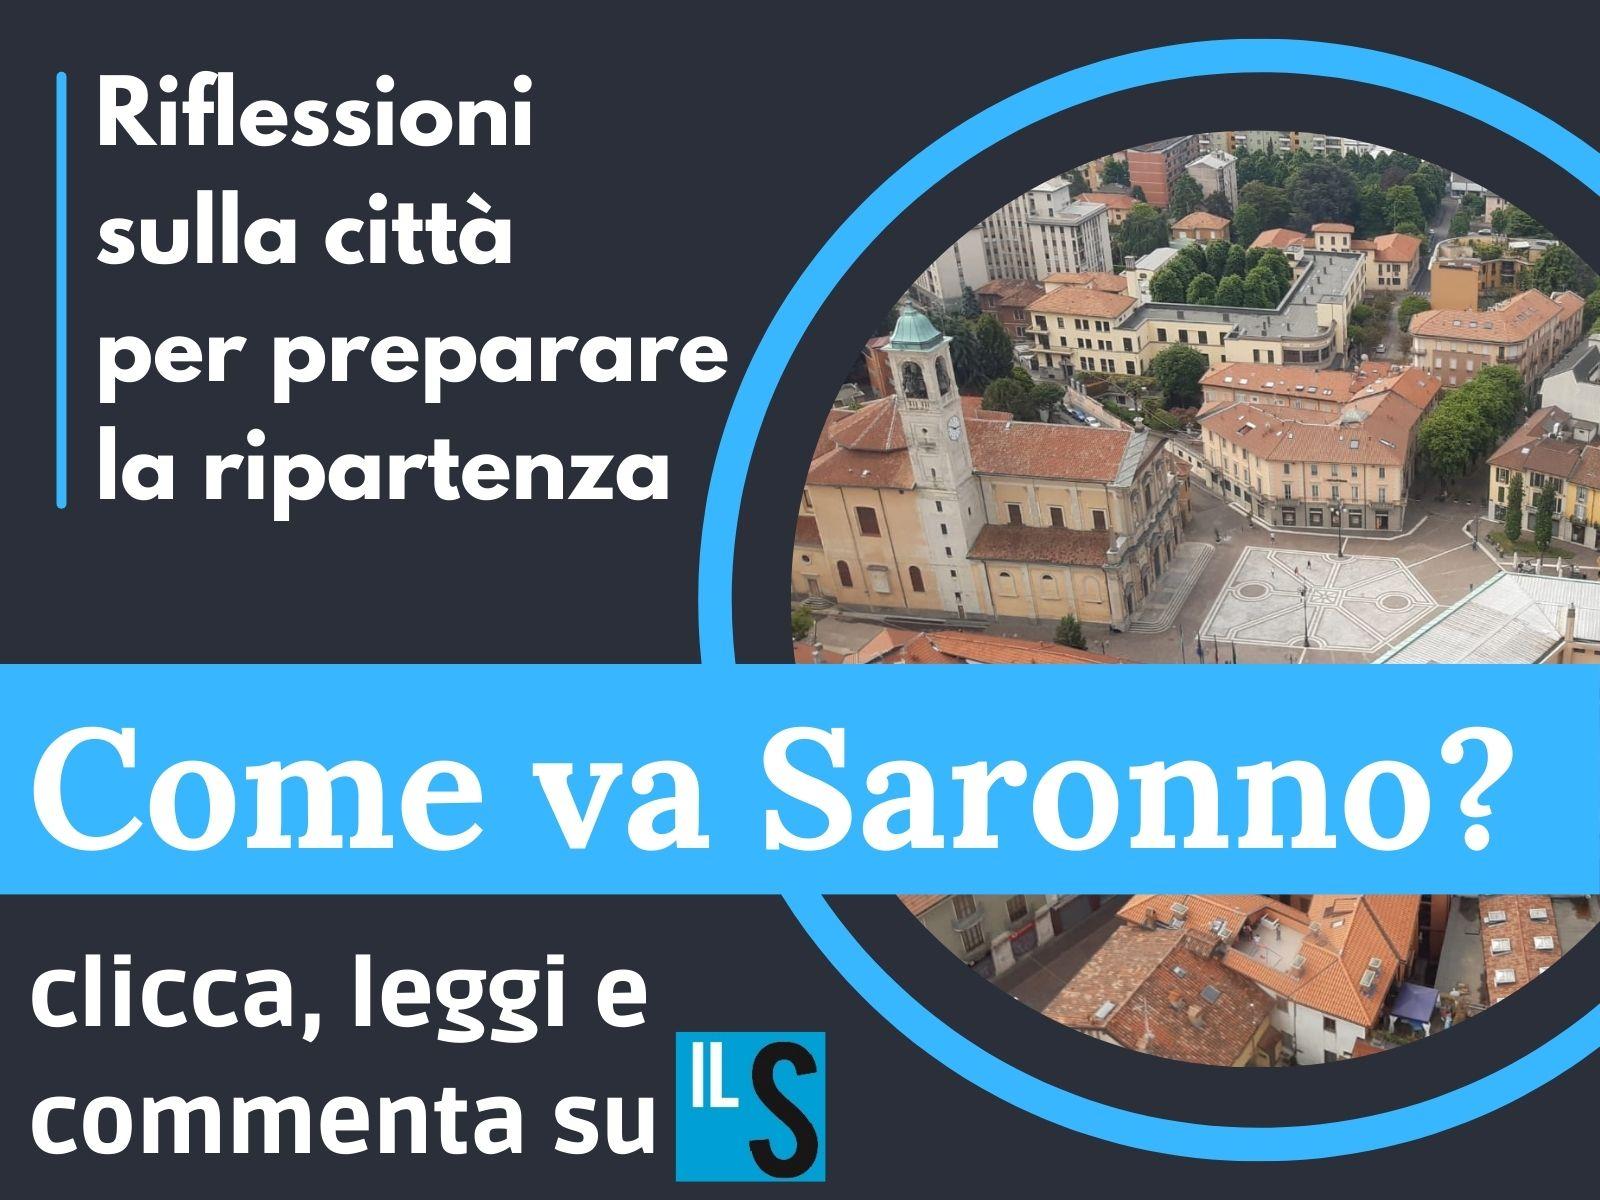 “Come va Saronno?” Cinque domande per fare il punto prima della ripartenza di settembre